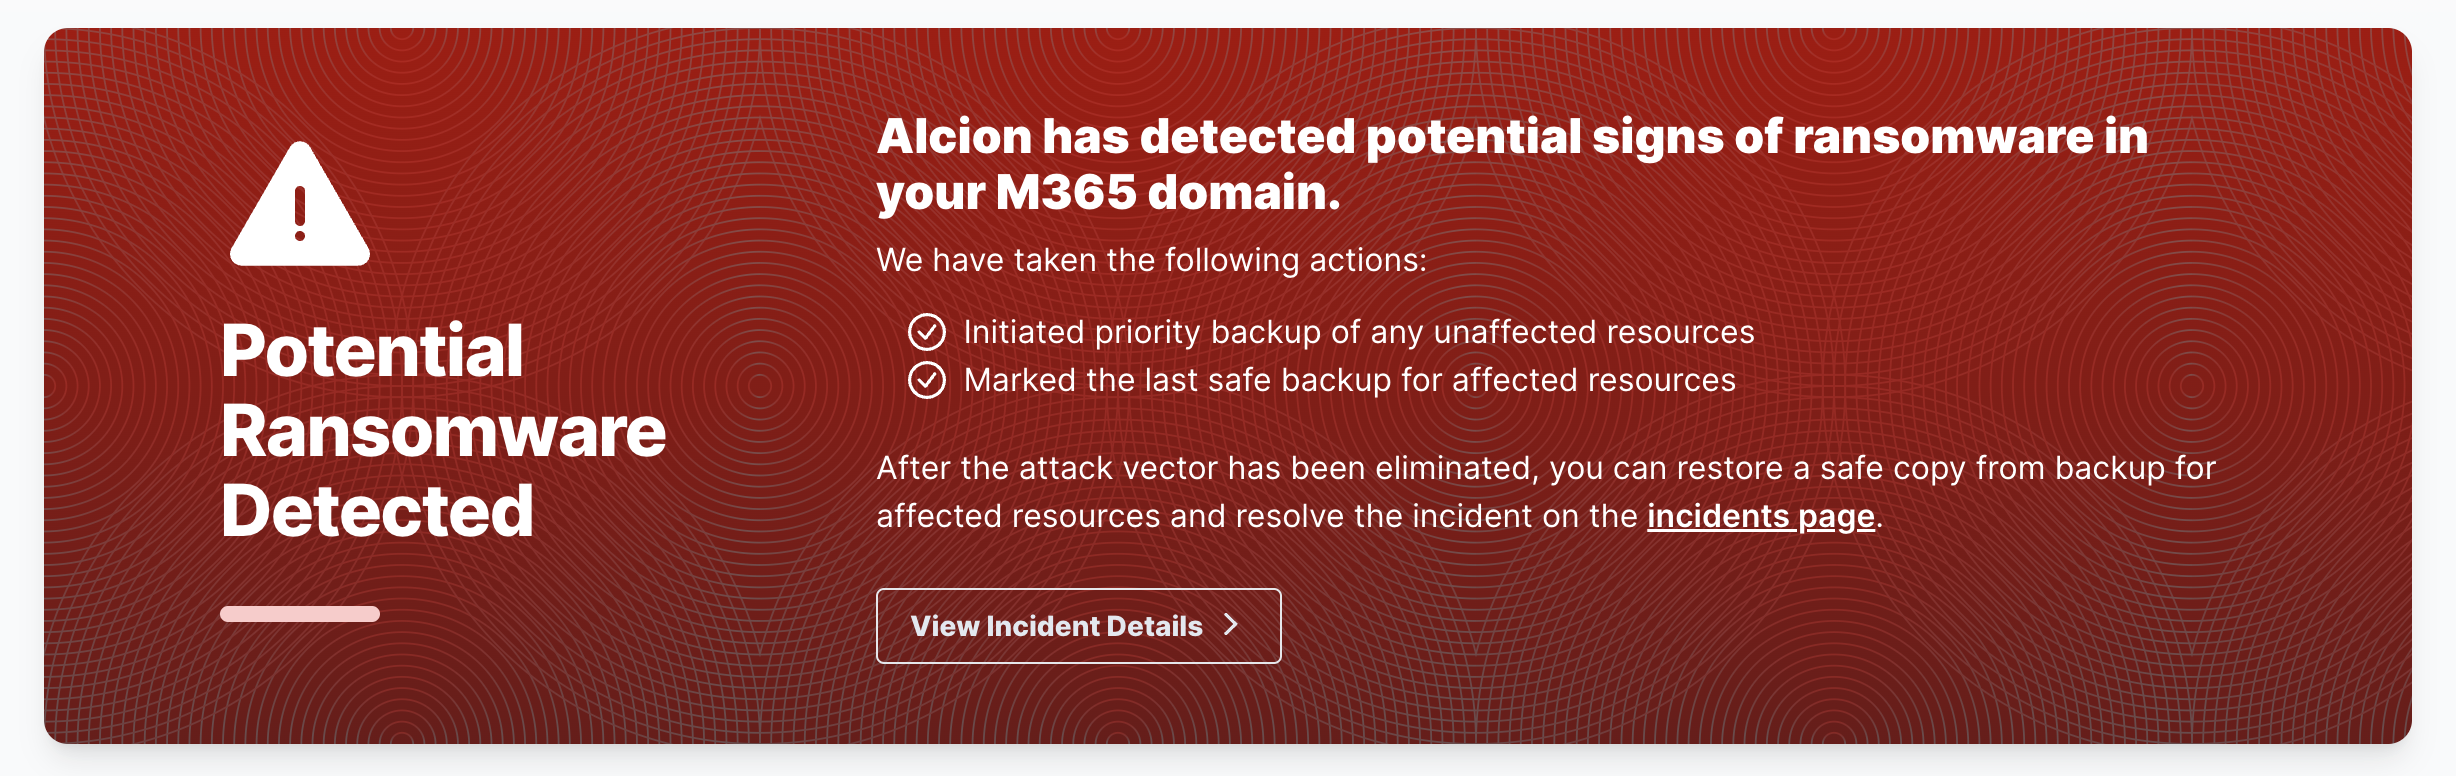 Ransomware detected alert